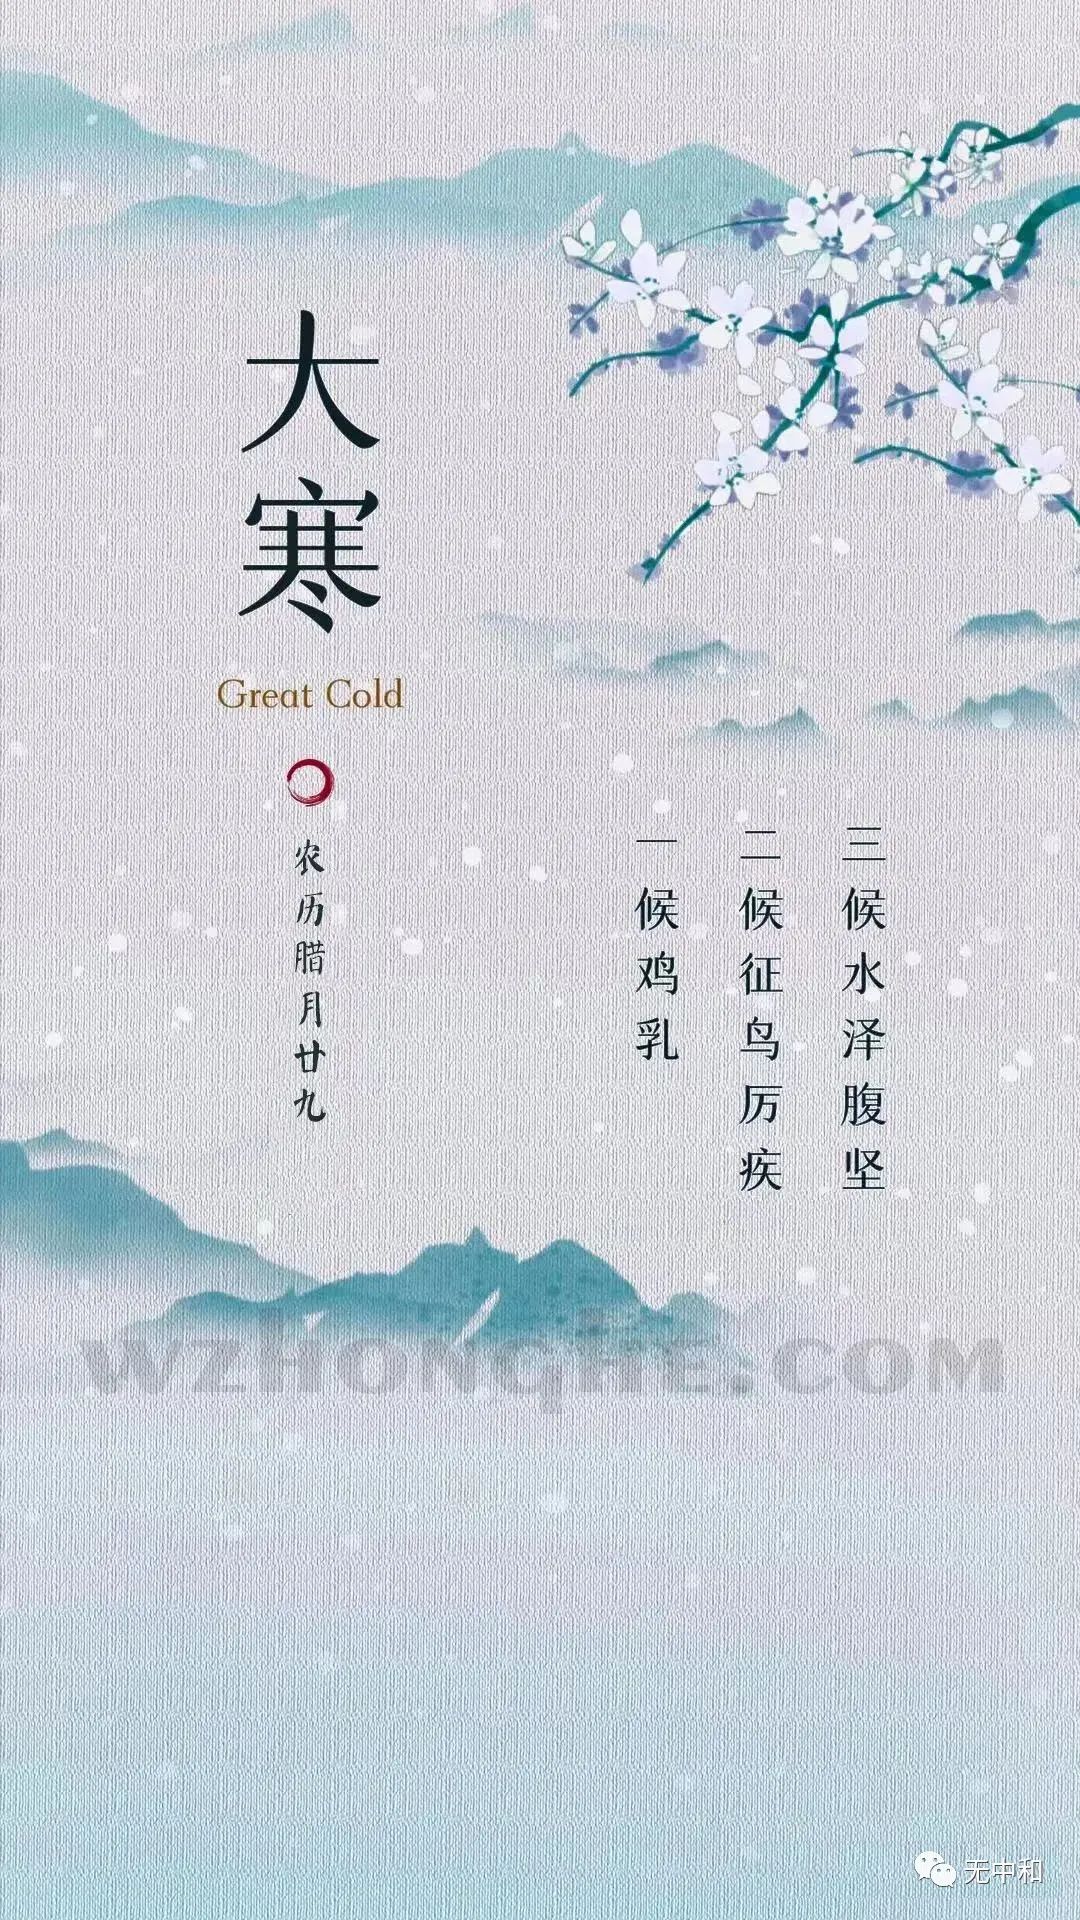 20230120大寒 - 无中和wzhonghe.com